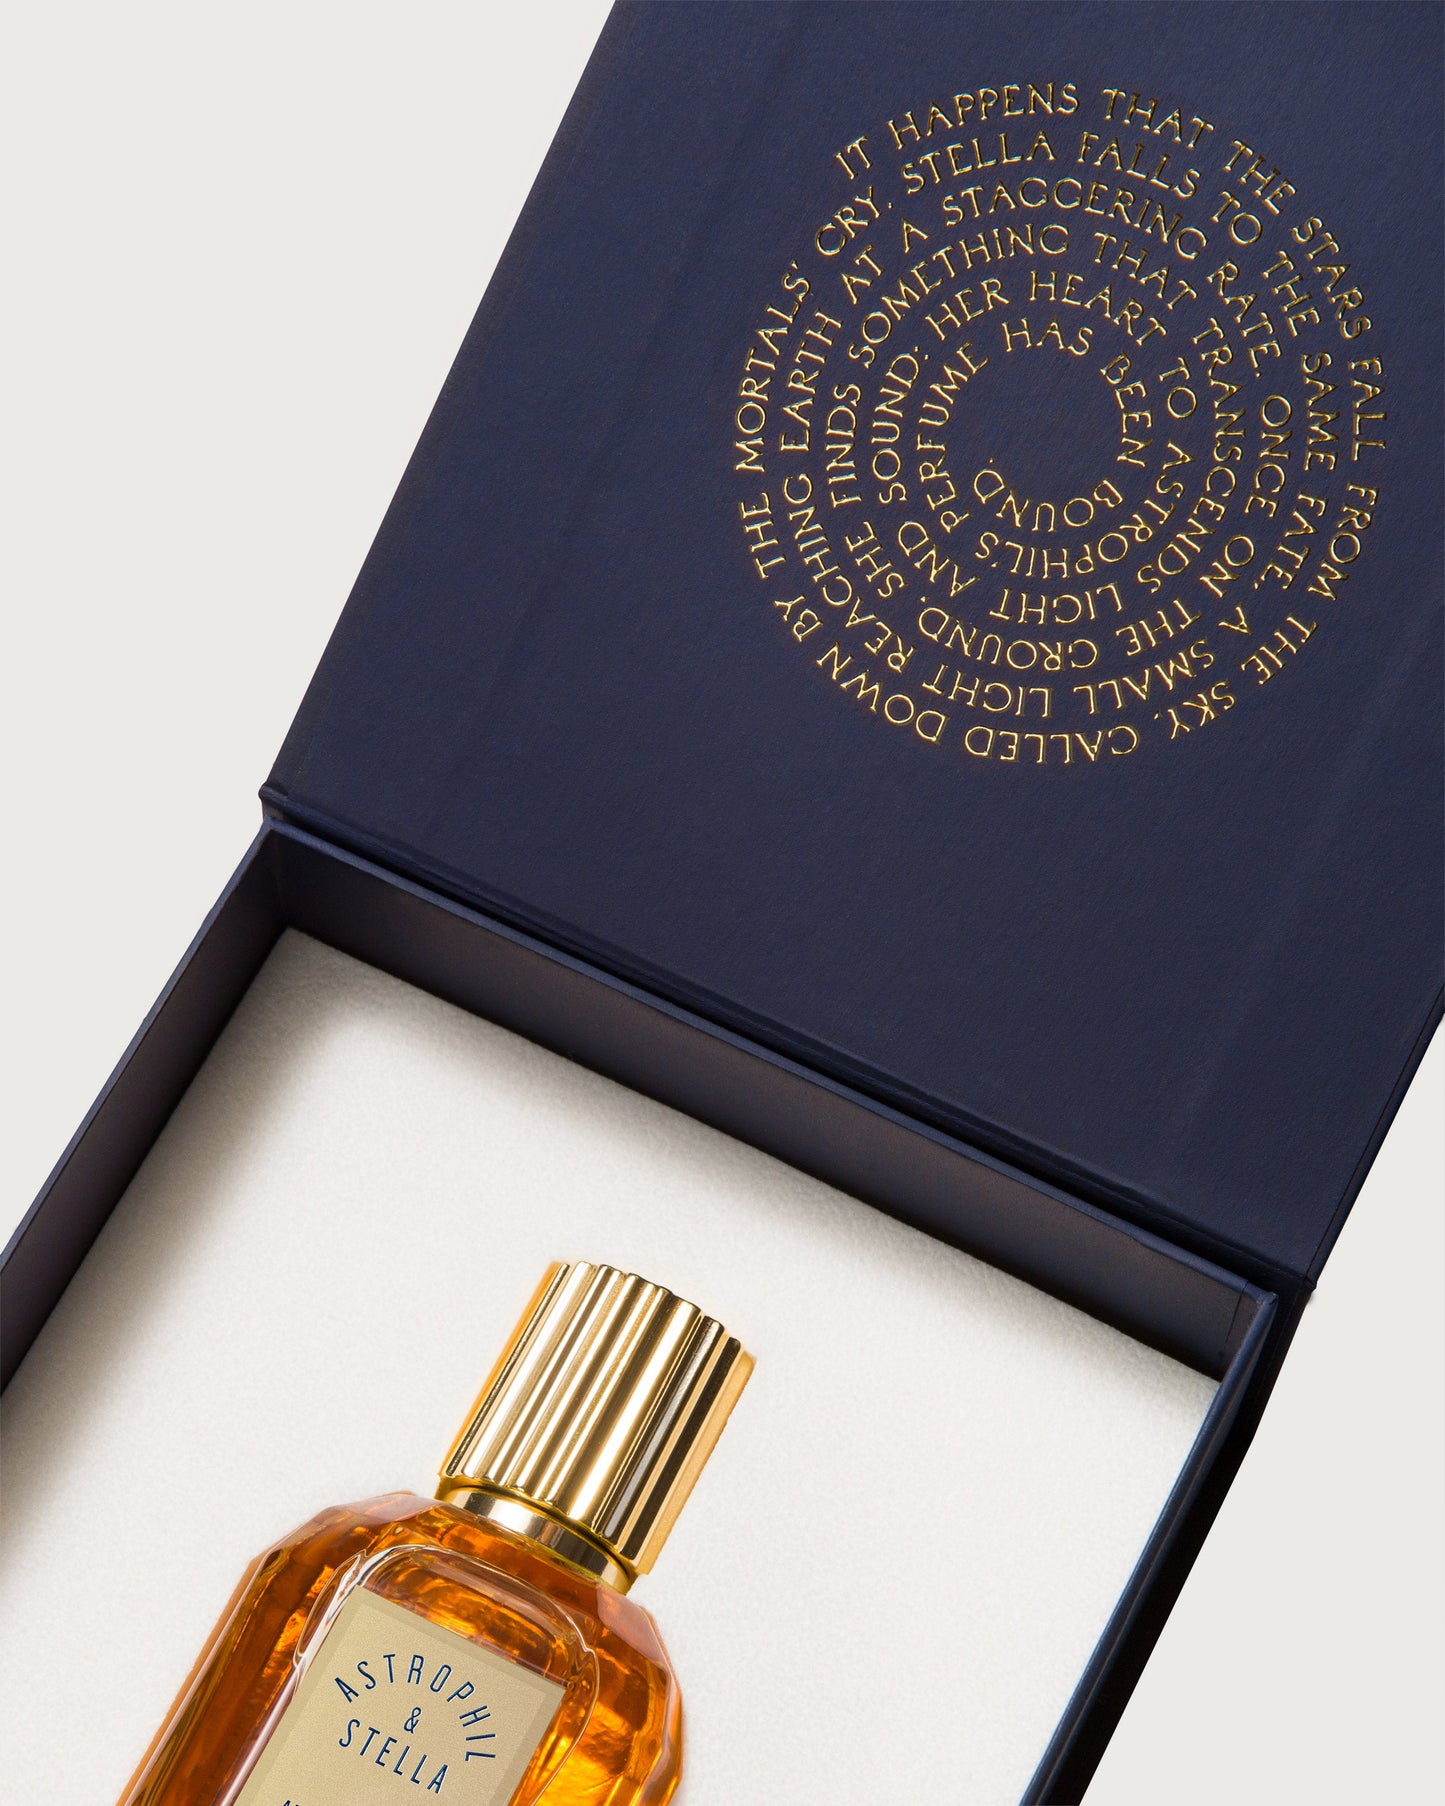 Amberlievable Astrophil & Stella Extrait de Parfum Sample 2ml